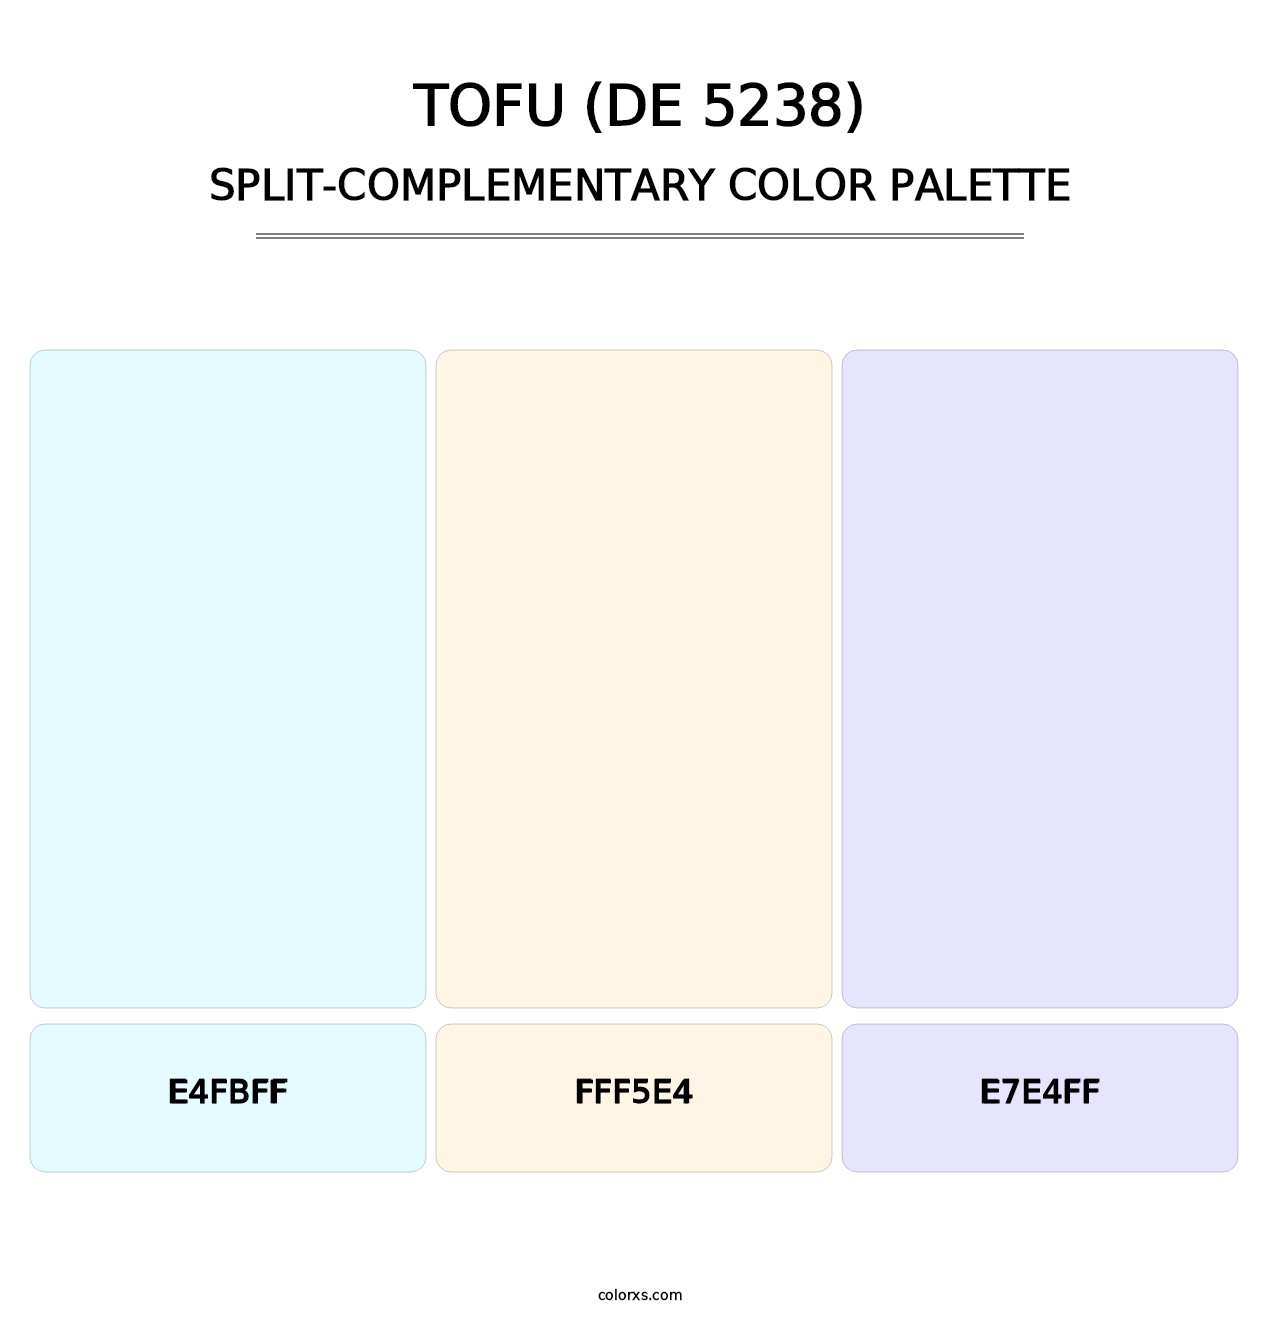 Tofu (DE 5238) - Split-Complementary Color Palette